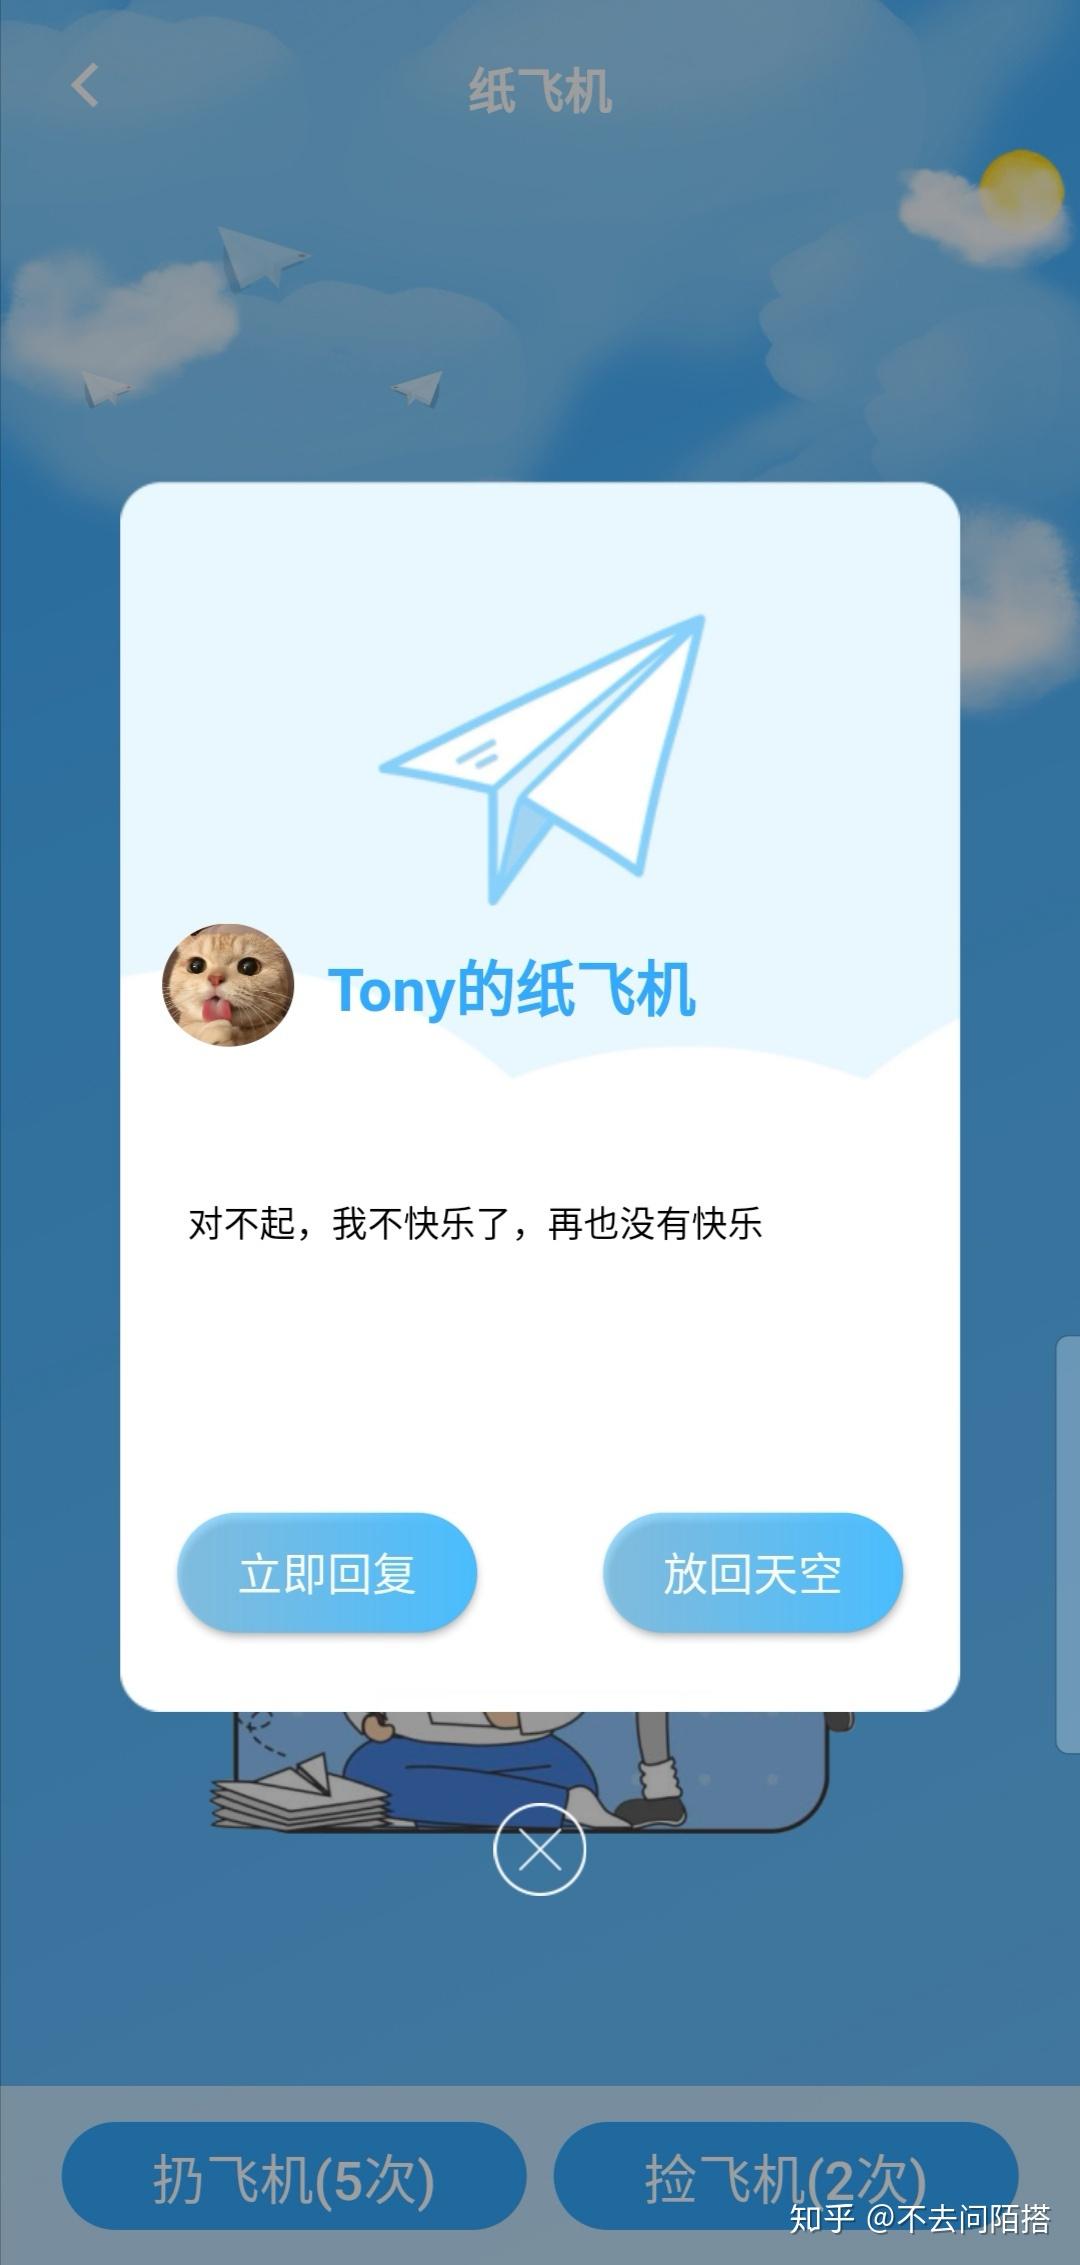 [纸飞机app下载中]纸飞机app下载中国能聊天吗